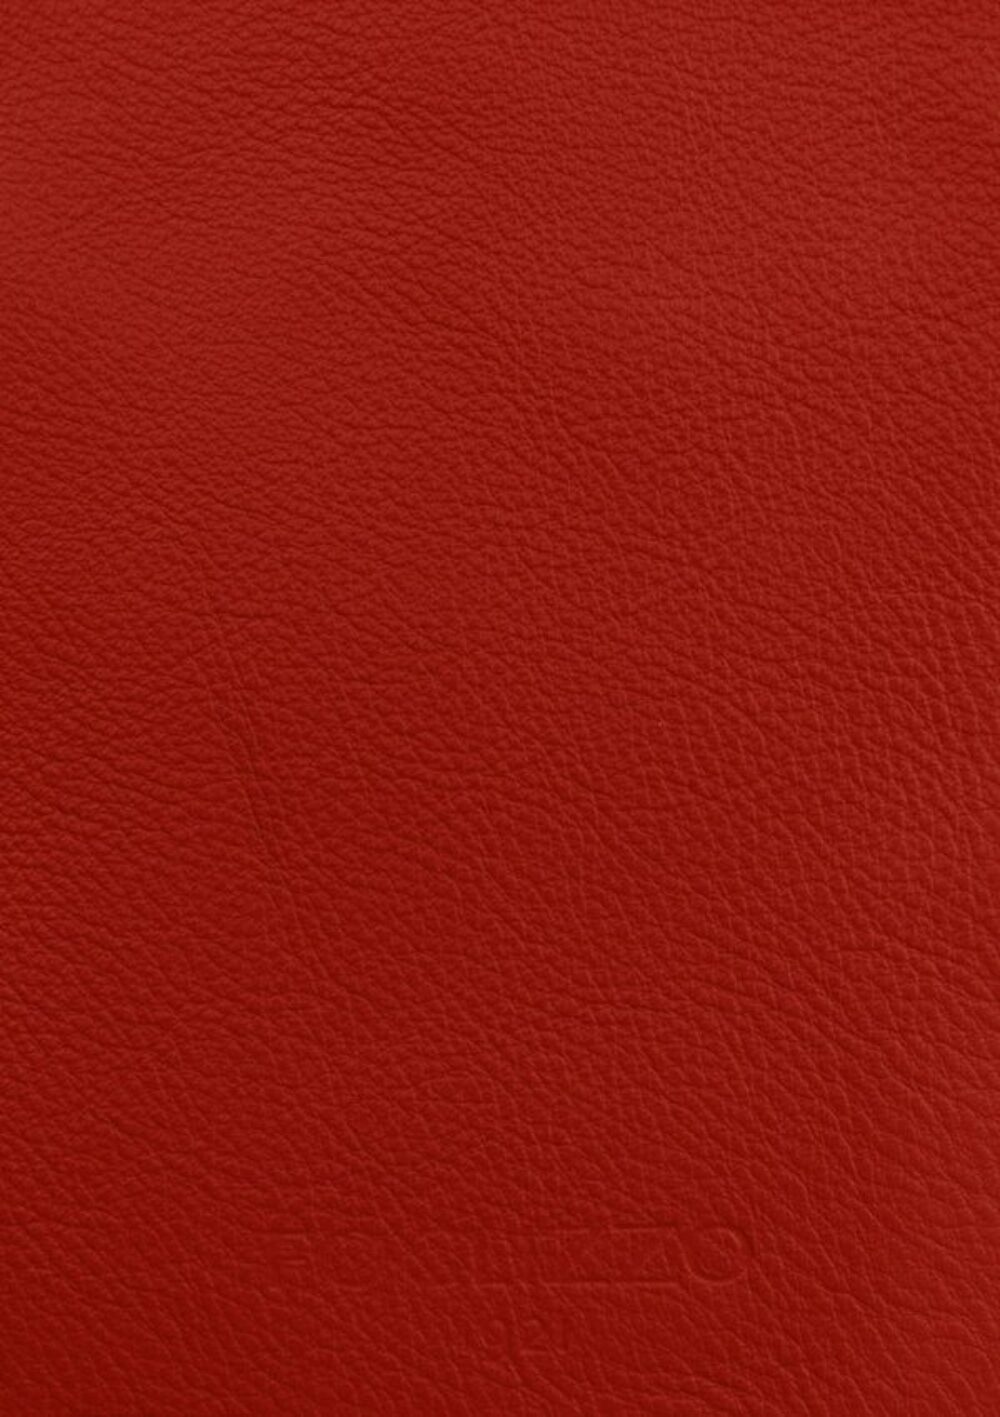 Diseño de lujo y alfombras de alta gama hechas a medida • Crimson Red Jade